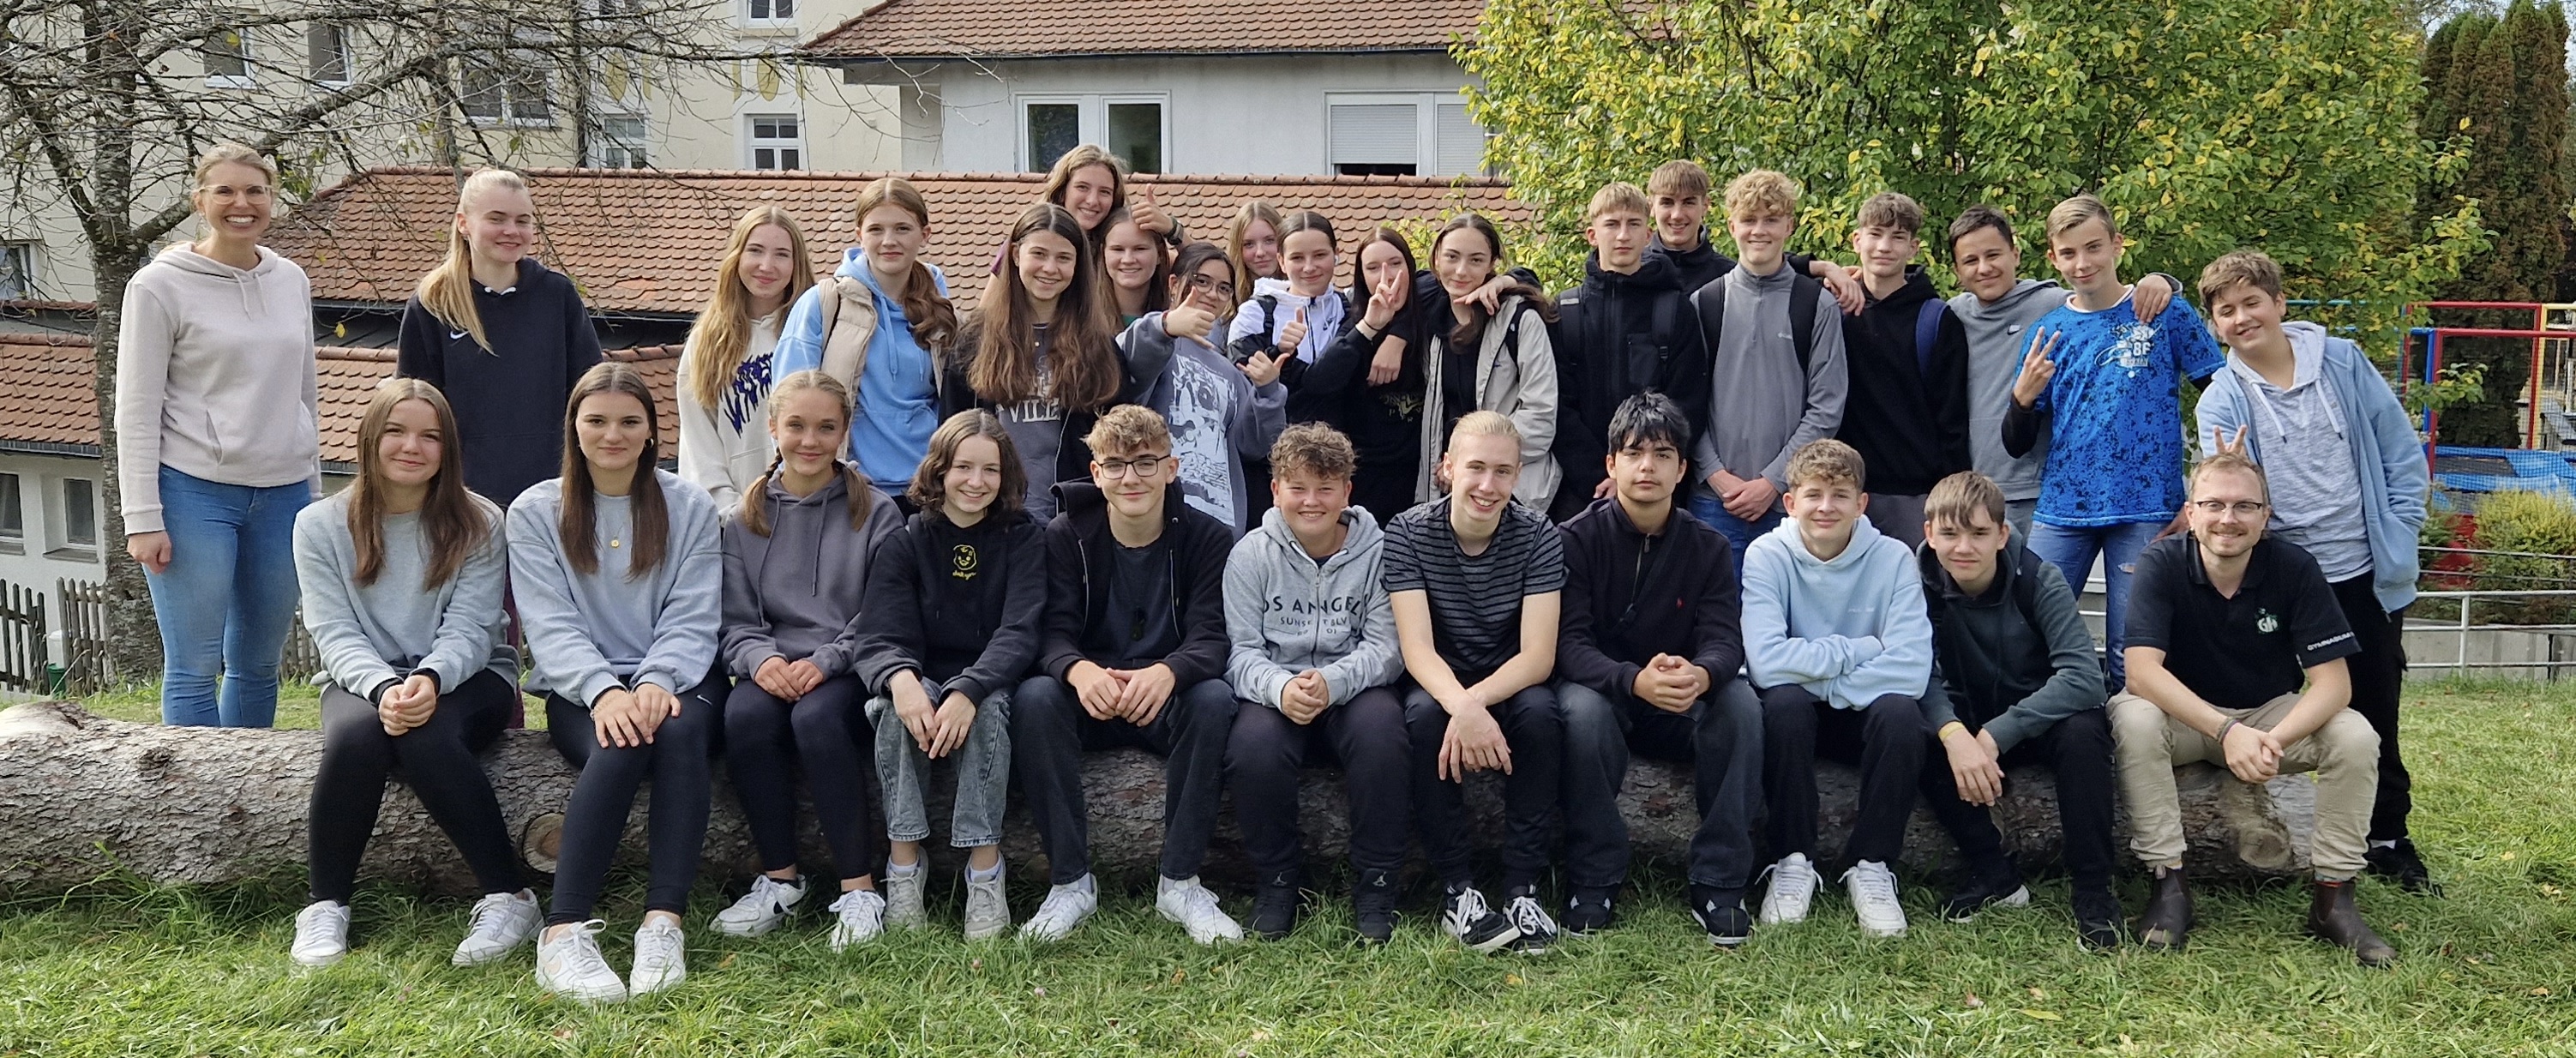 Klassenstufe 9 klettert in Sigmaringen